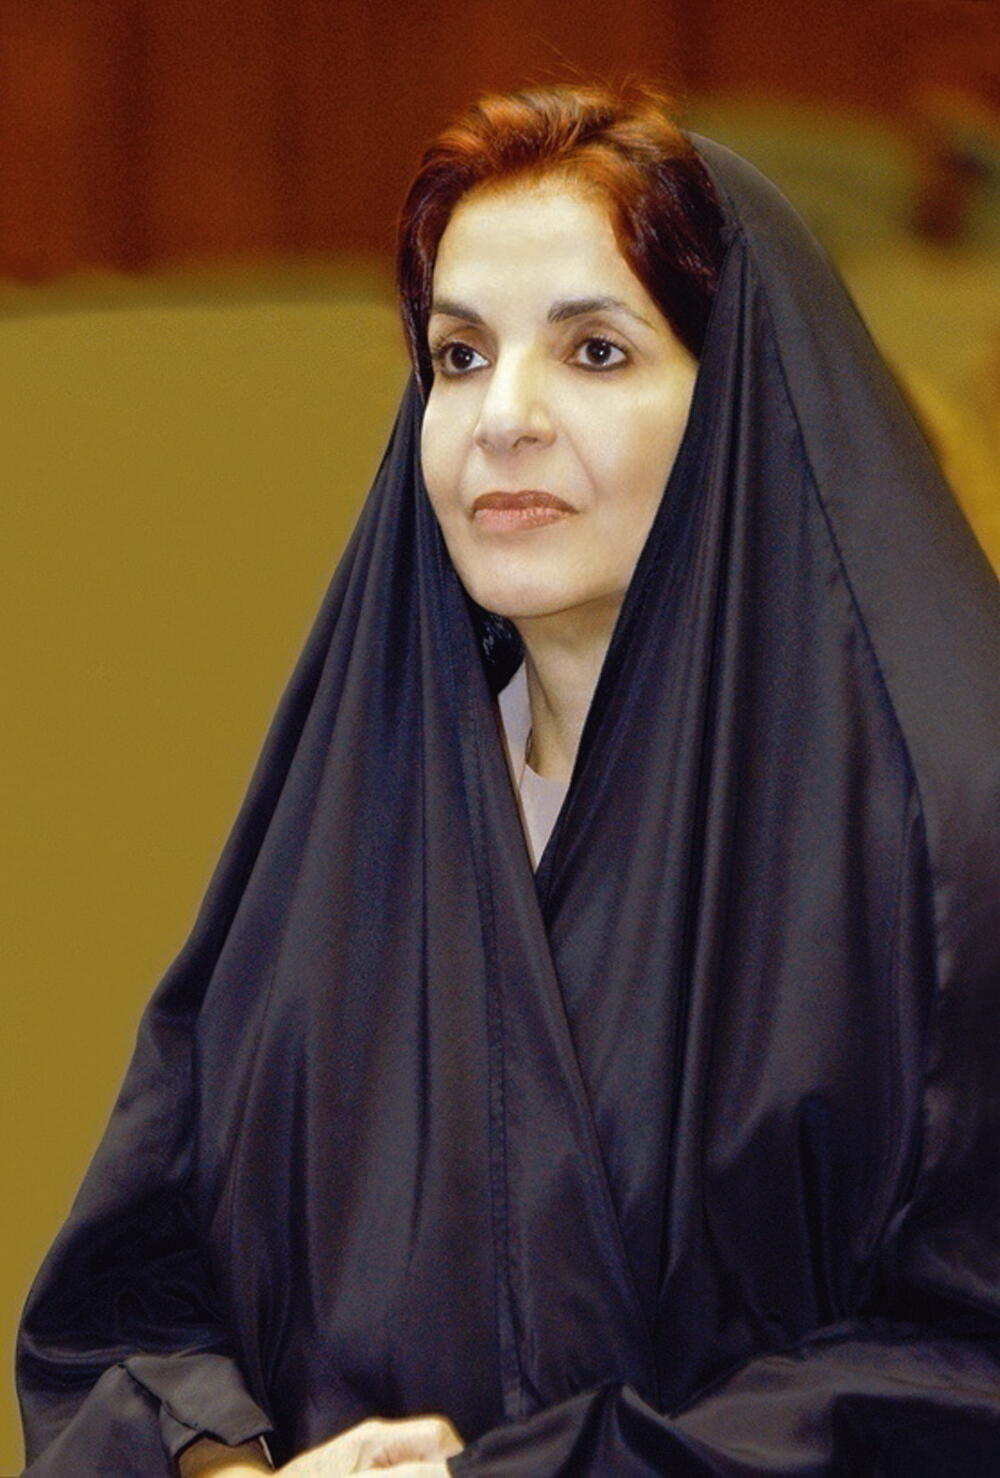 BahrainNOW.net | قرينة عاهل البلاد المفدى تبعث برقية تهنئة بمناسبة تدشين "مركز فاطمة بنت مبارك للمرأة والسلام والأمن"